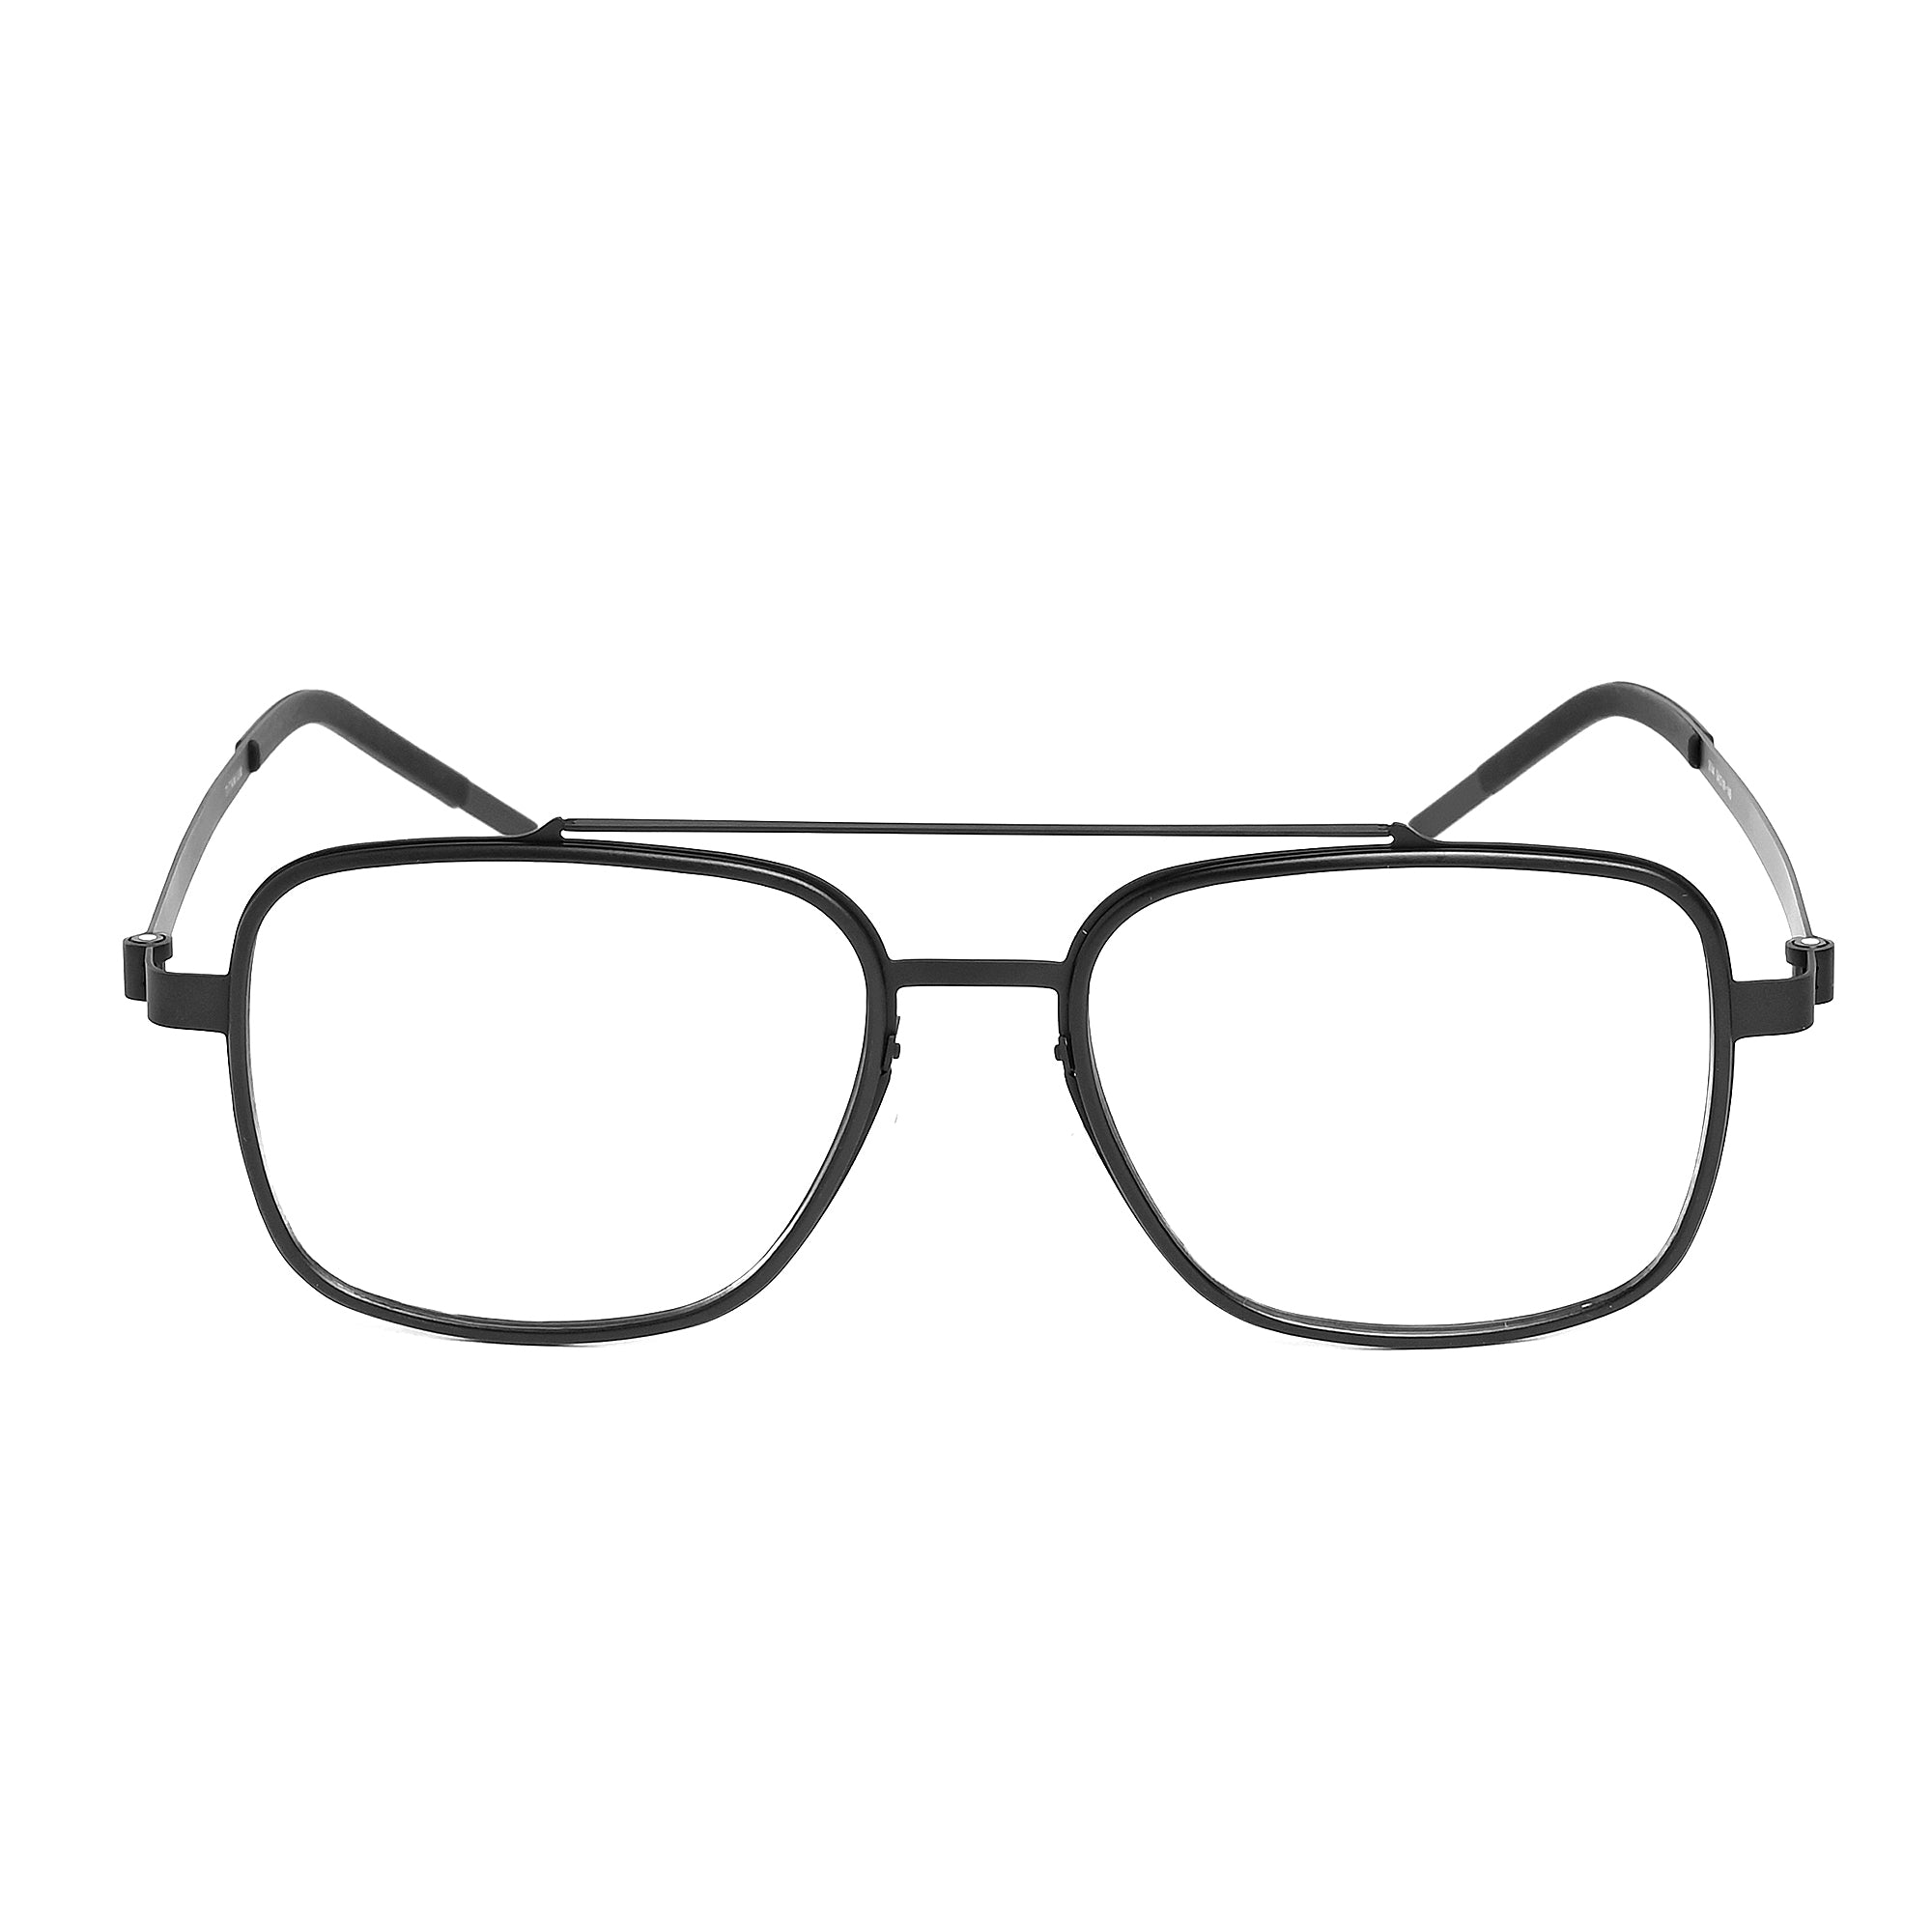 Black & Gray Square Titanium Eyeglasses - LG-006 BLGRY